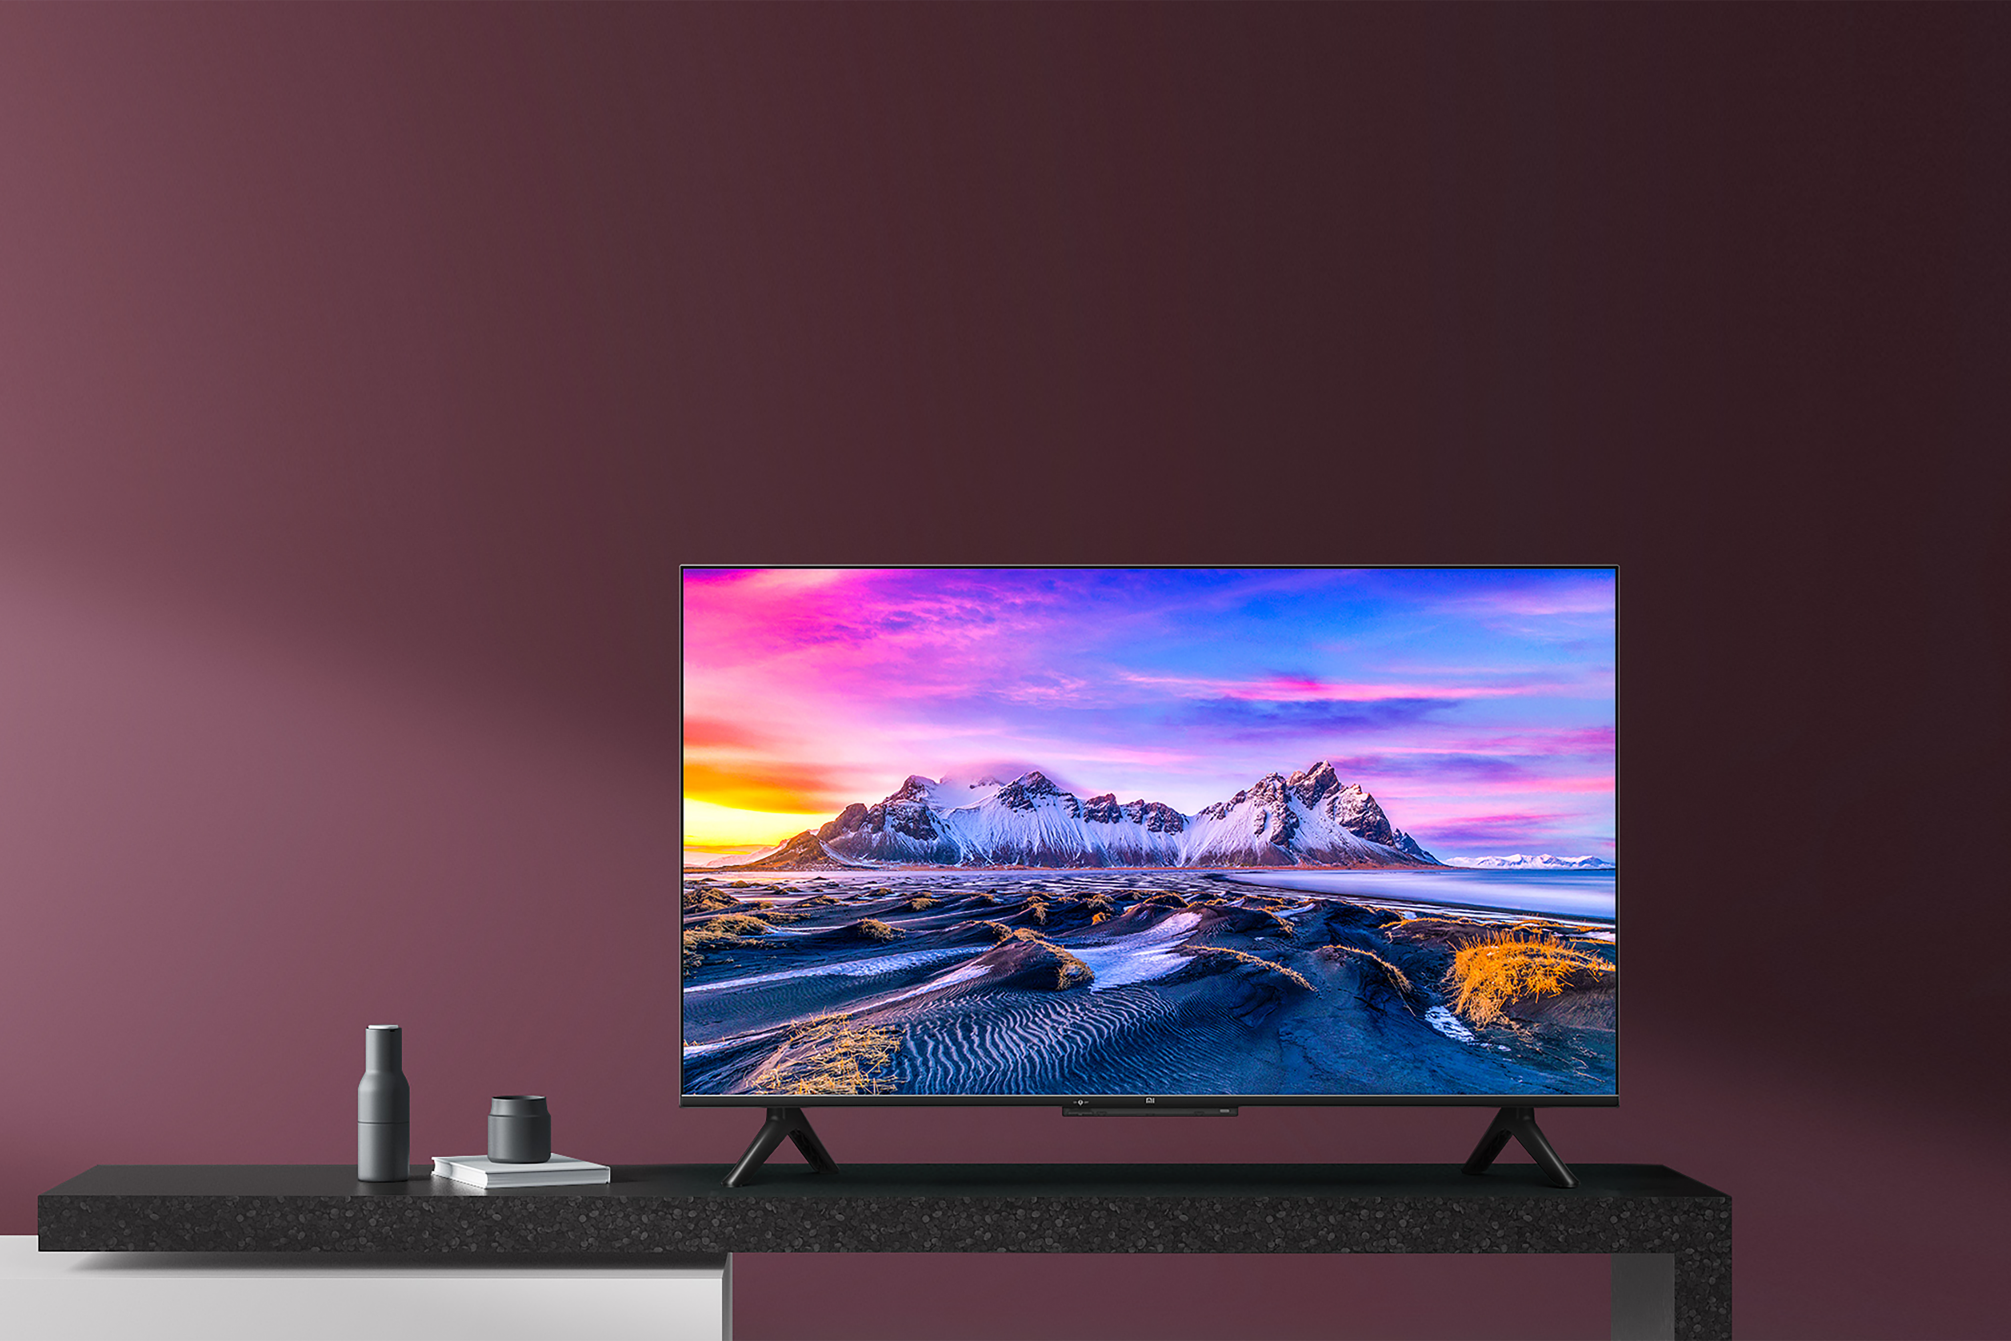 Xiaomi Mi TV P1 43-inch Featured